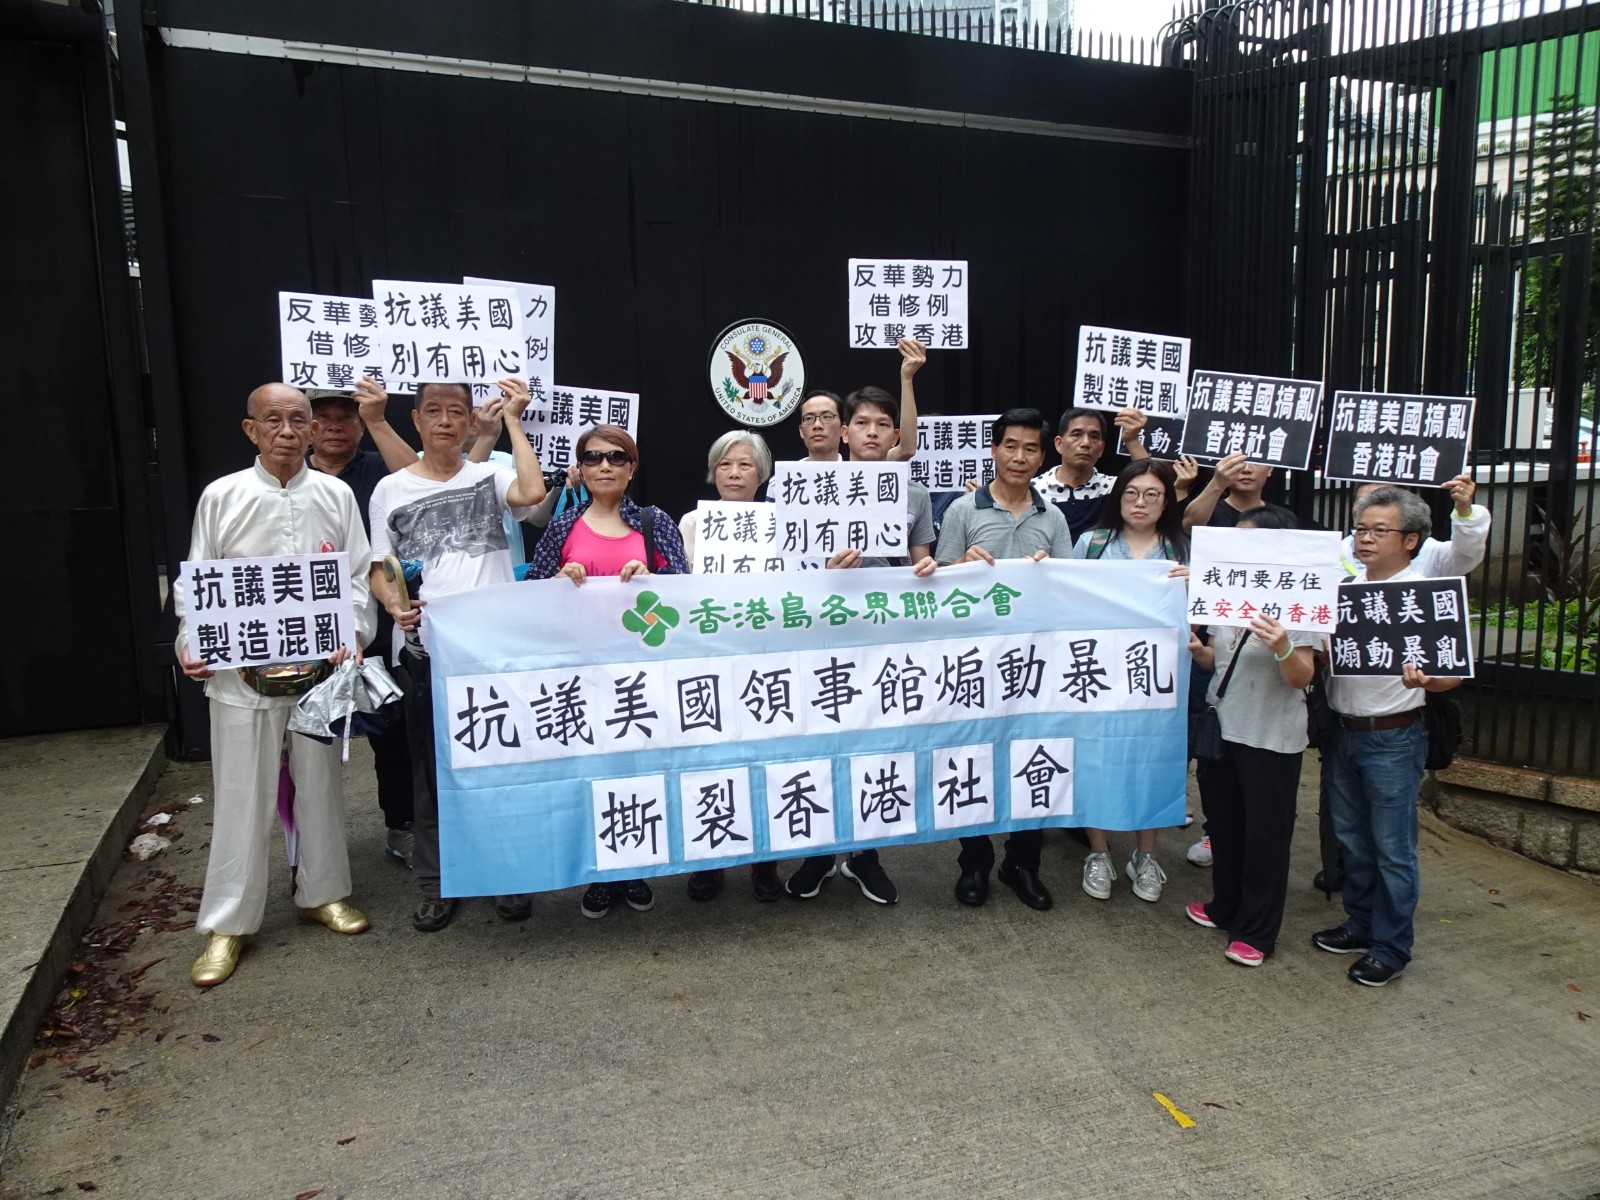 抗議美國領事館煽動暴亂撕裂香港社會​-0